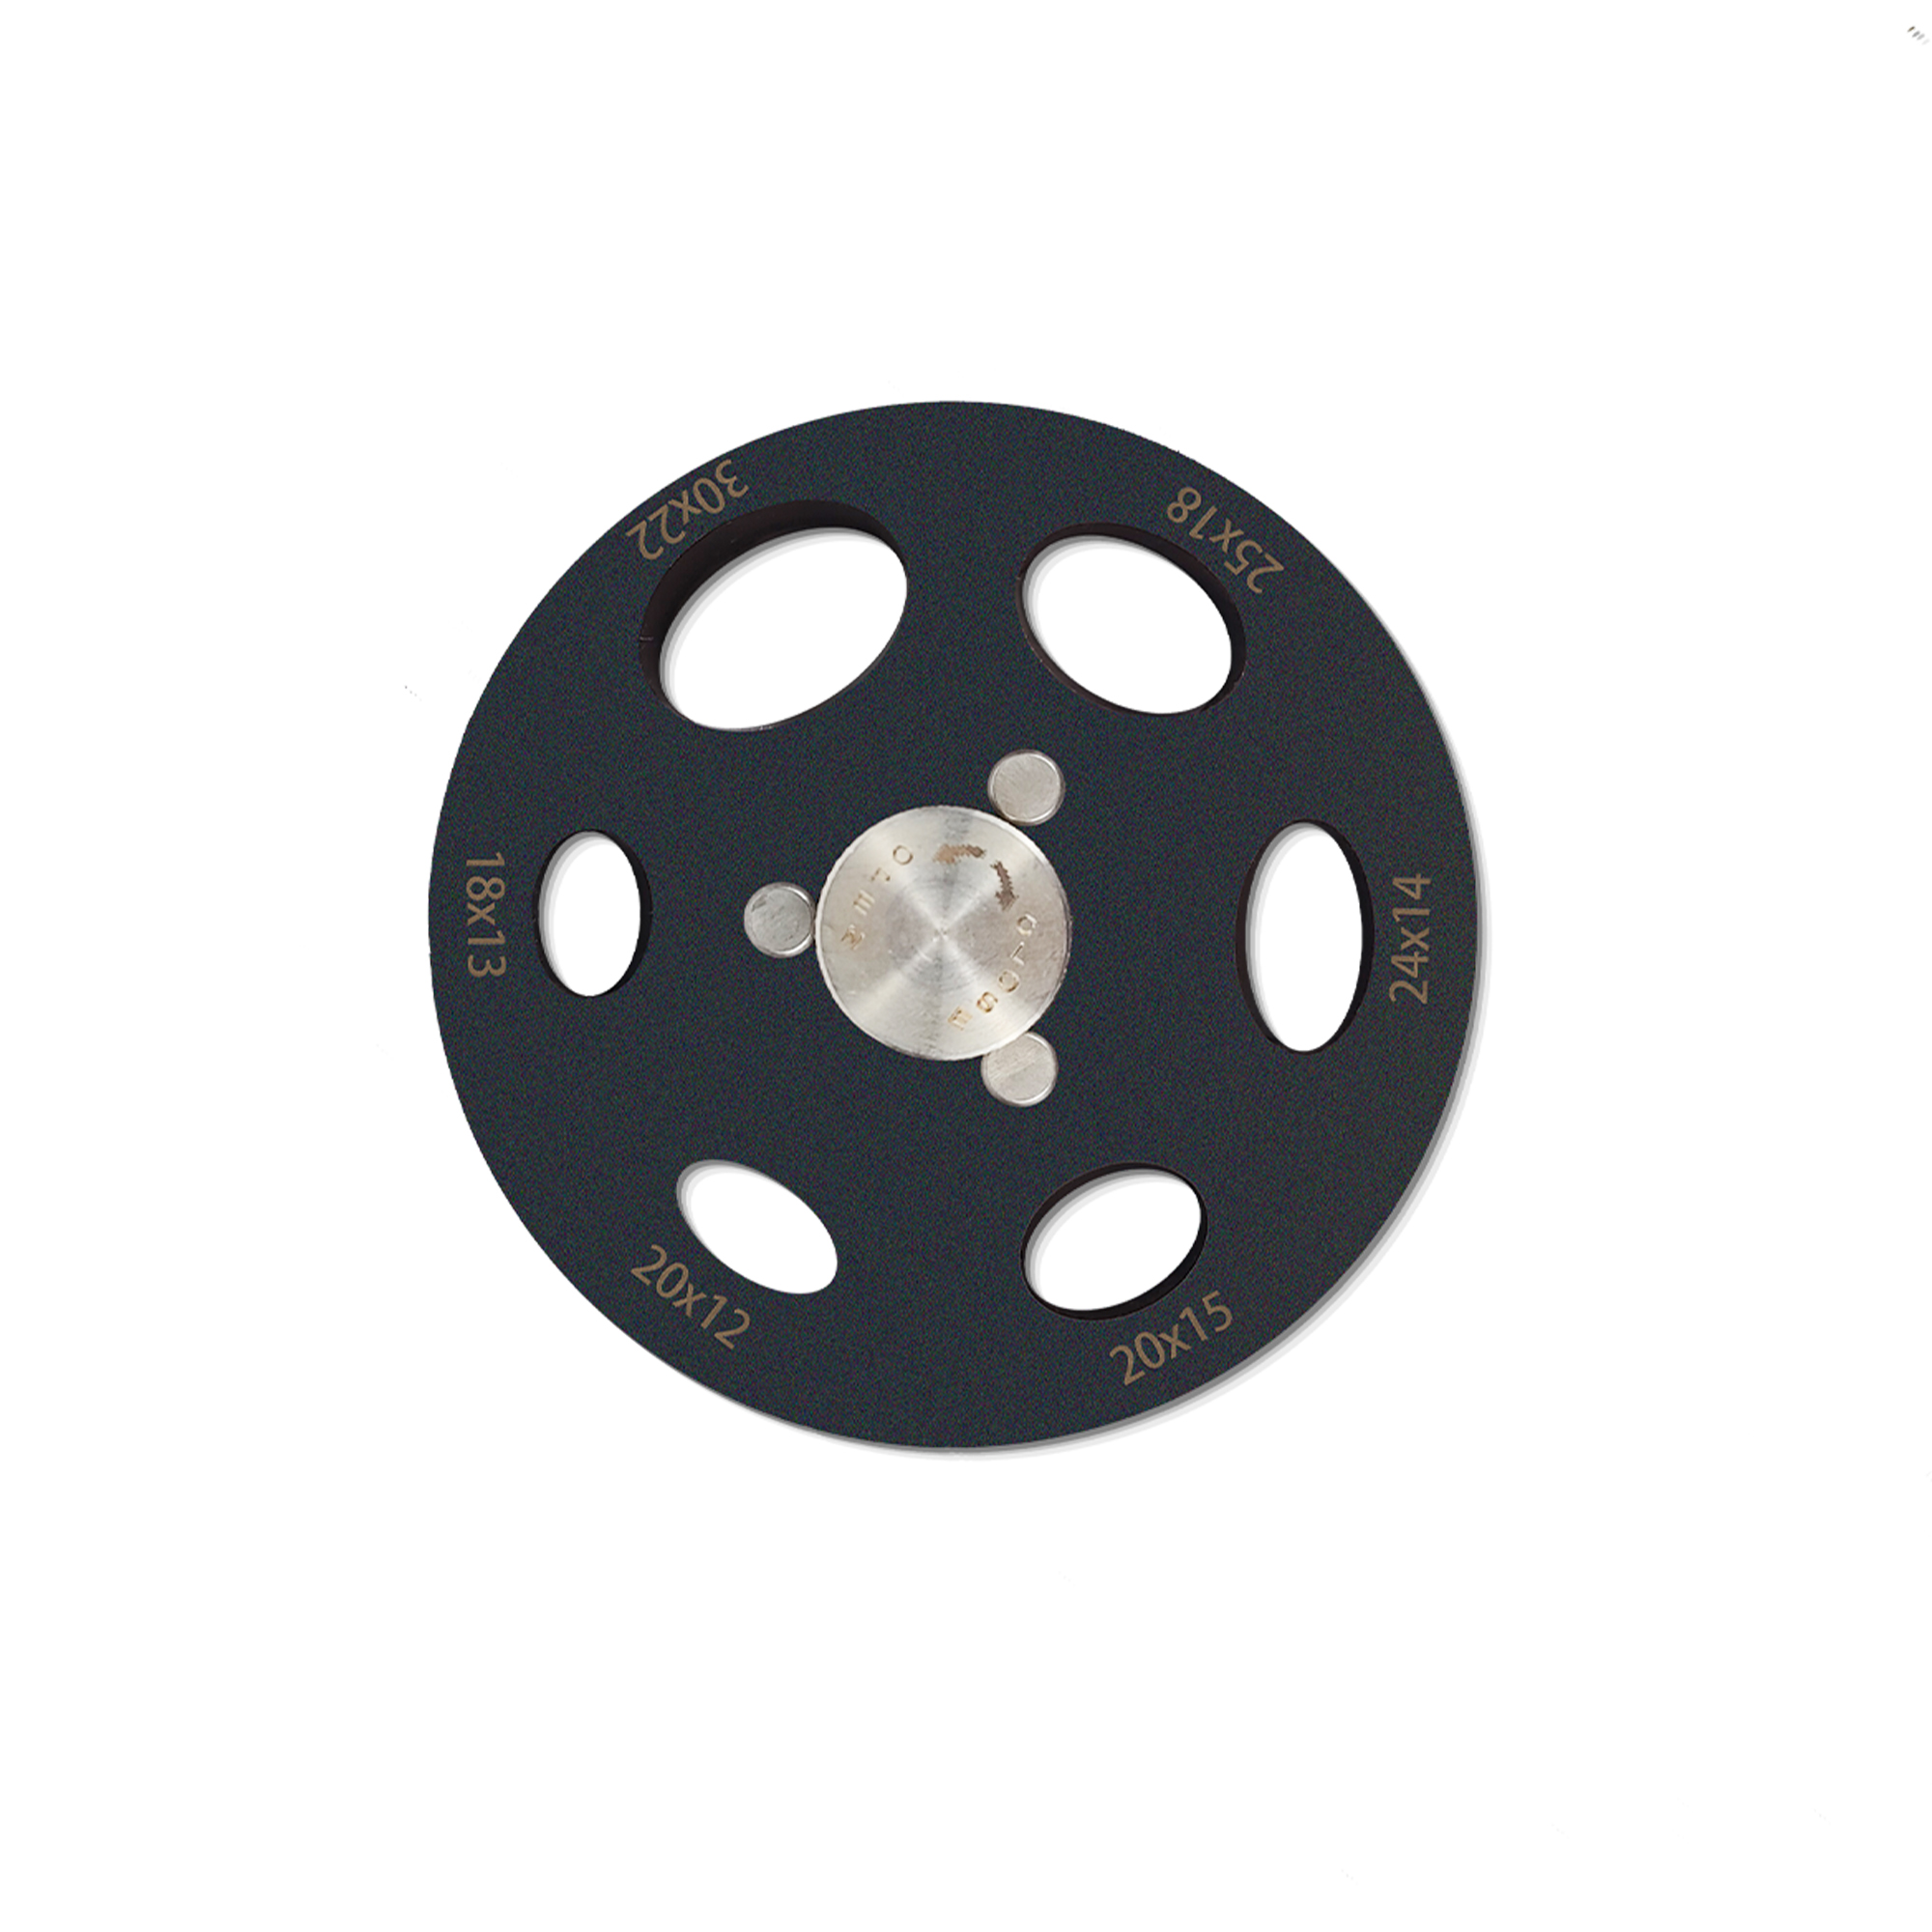 HH-CS01 Oval disc cutter set